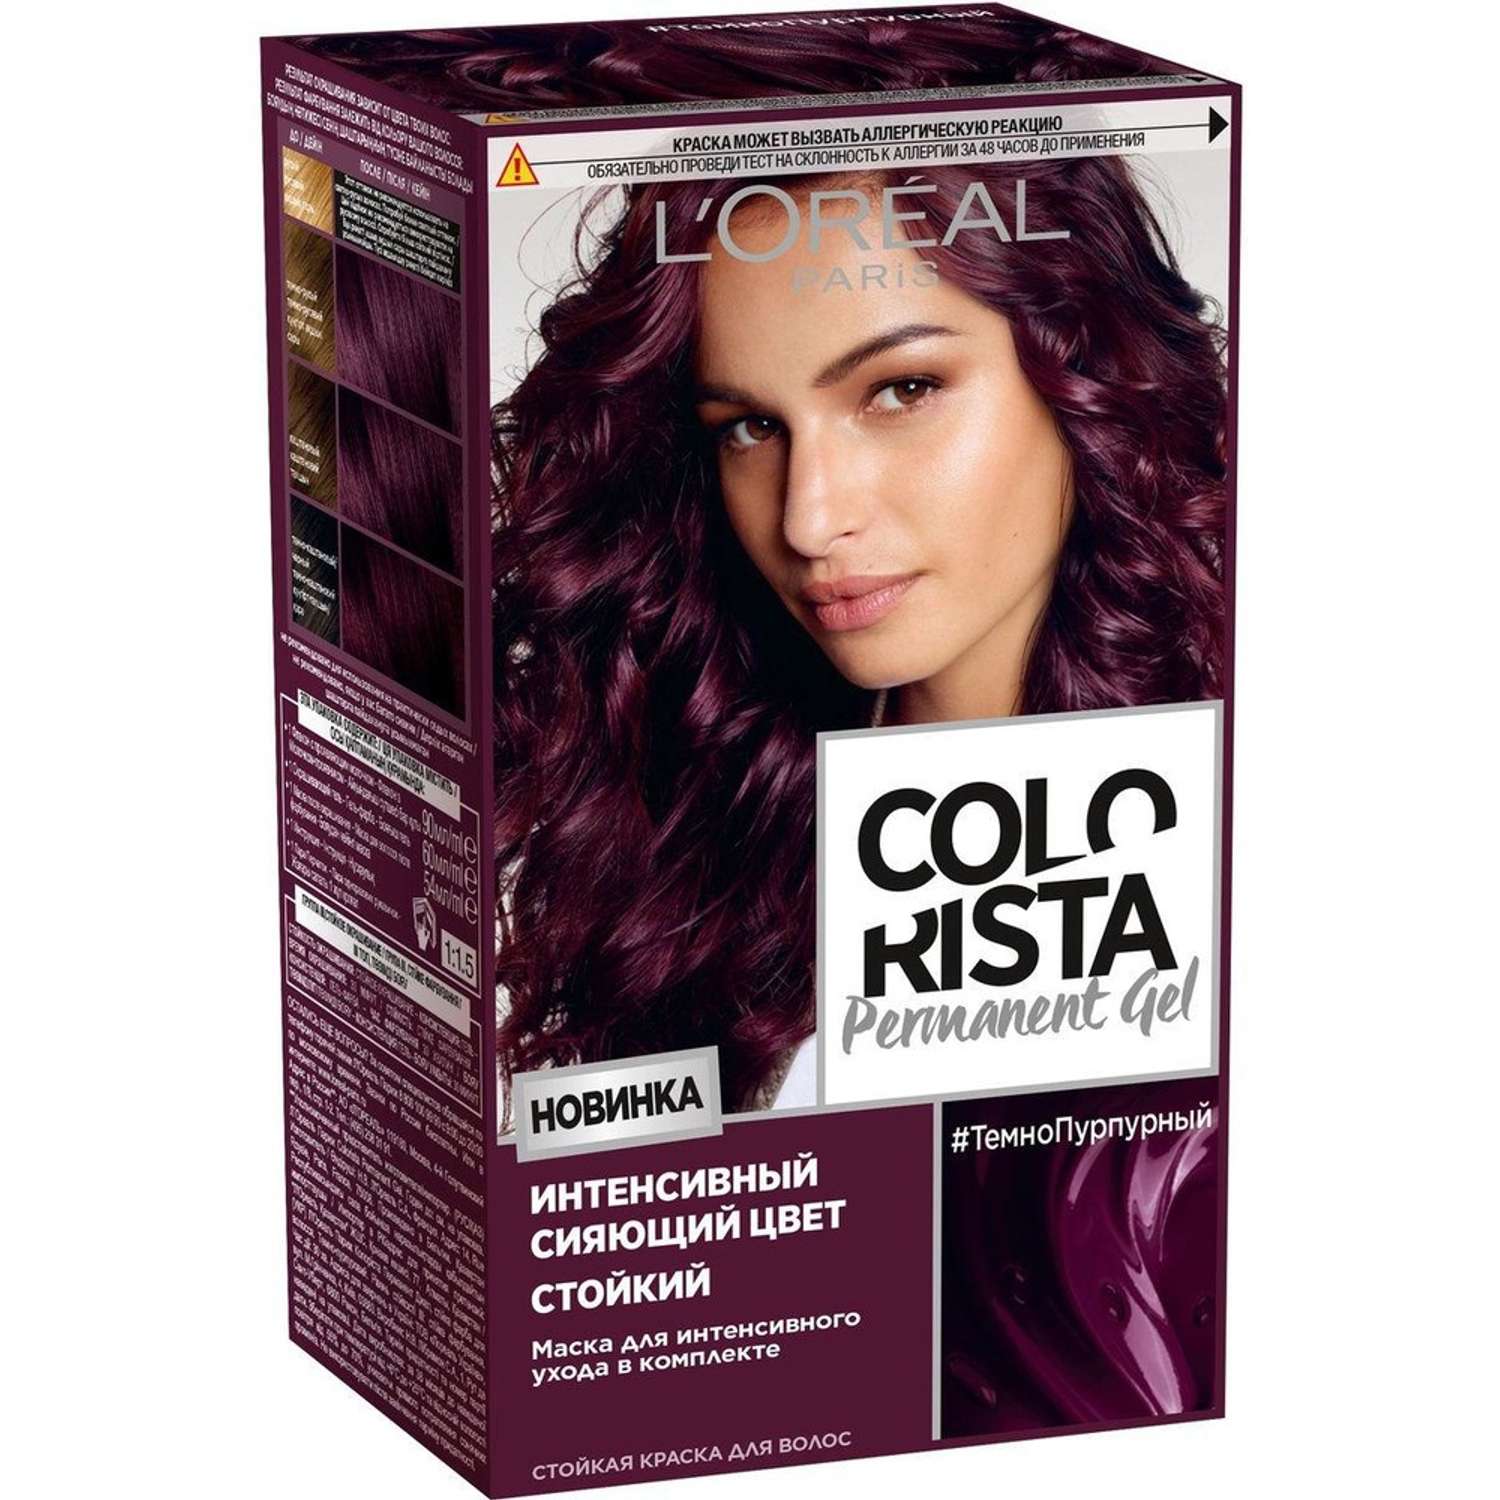 Краска для волос LOREAL Colorista Permanent Gel оттенок темно-пурпурный - фото 1